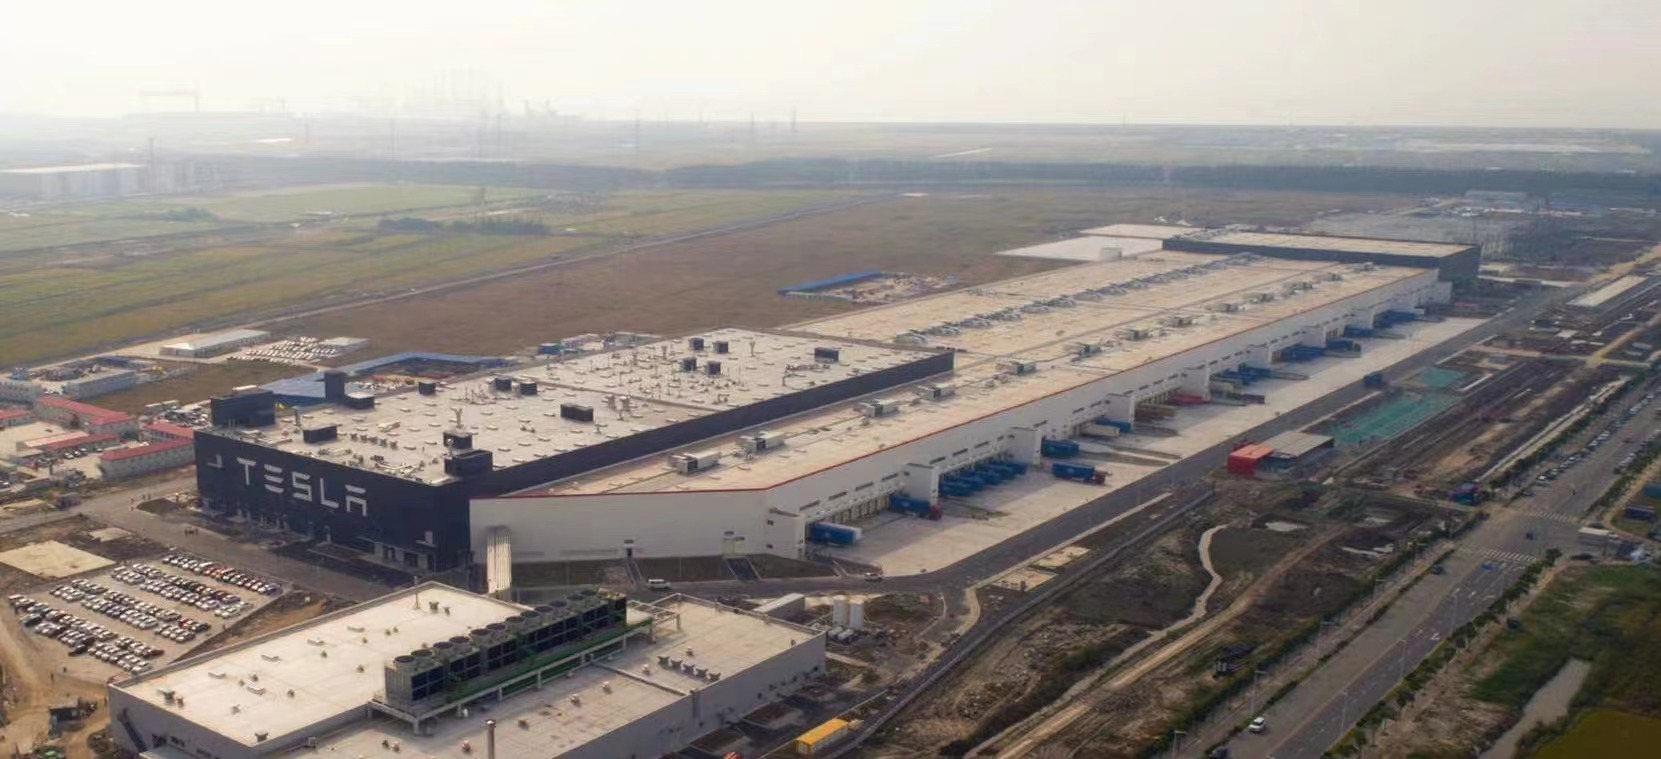 特斯拉上海超级工厂便位于上海市浦东新区临港产业区,因此日前有网络